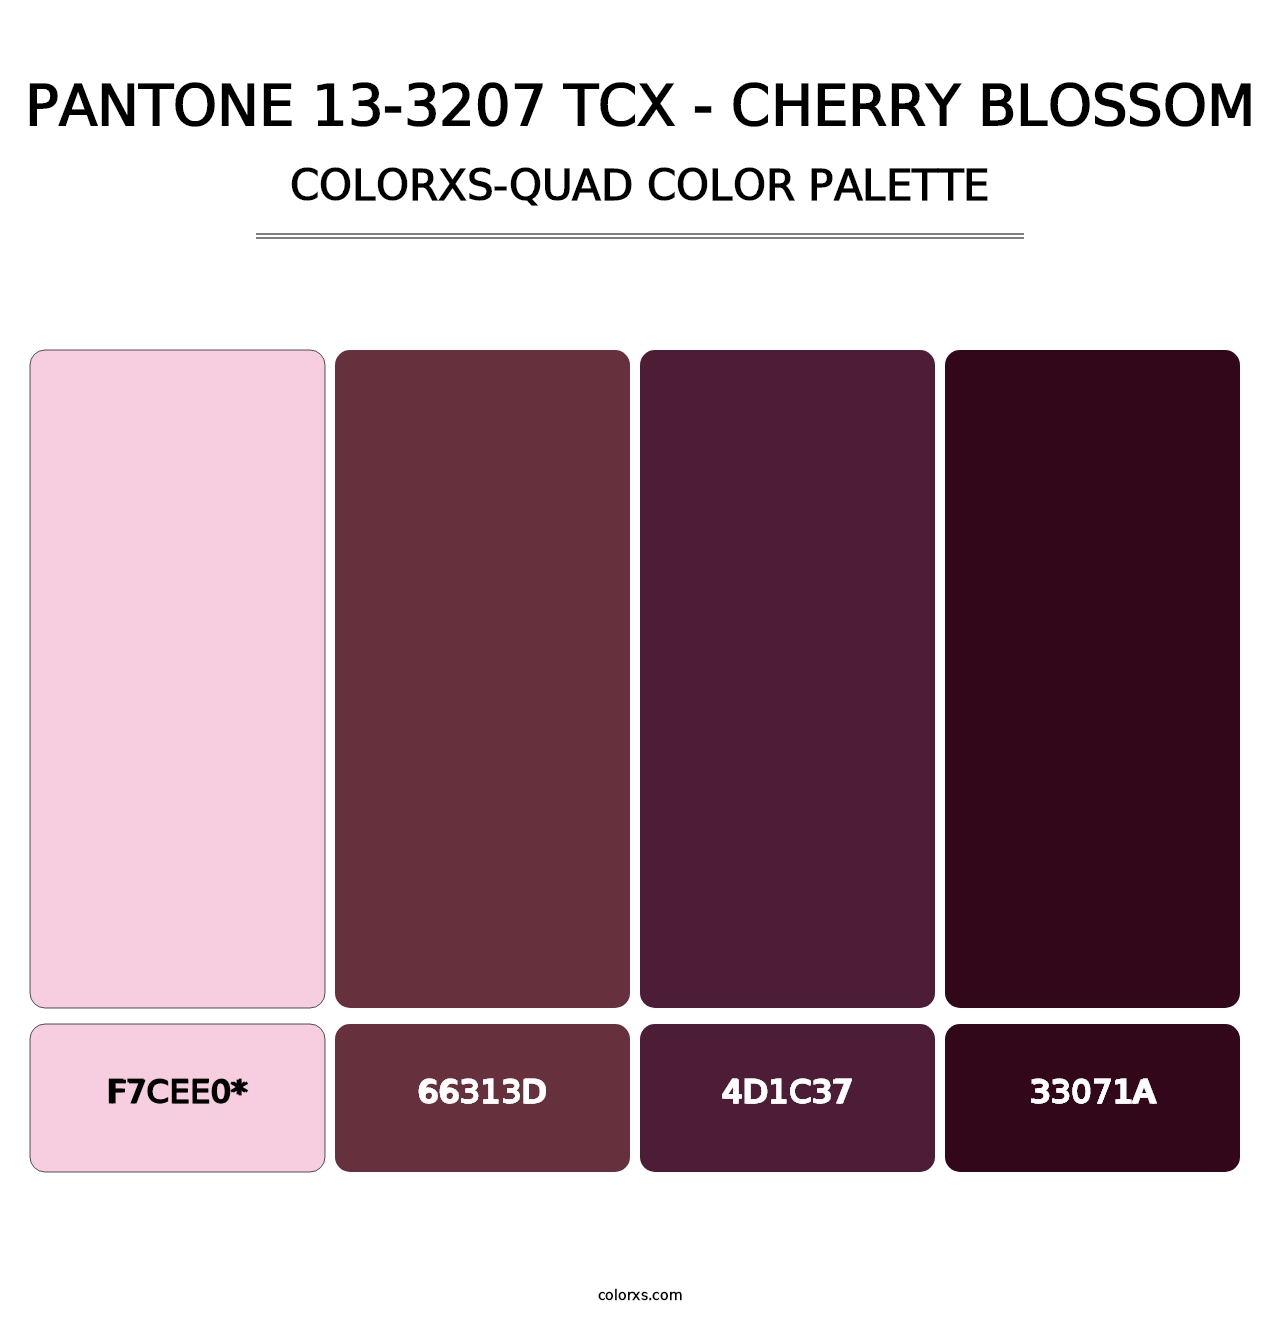 PANTONE 13-3207 TCX - Cherry Blossom - Colorxs Quad Palette